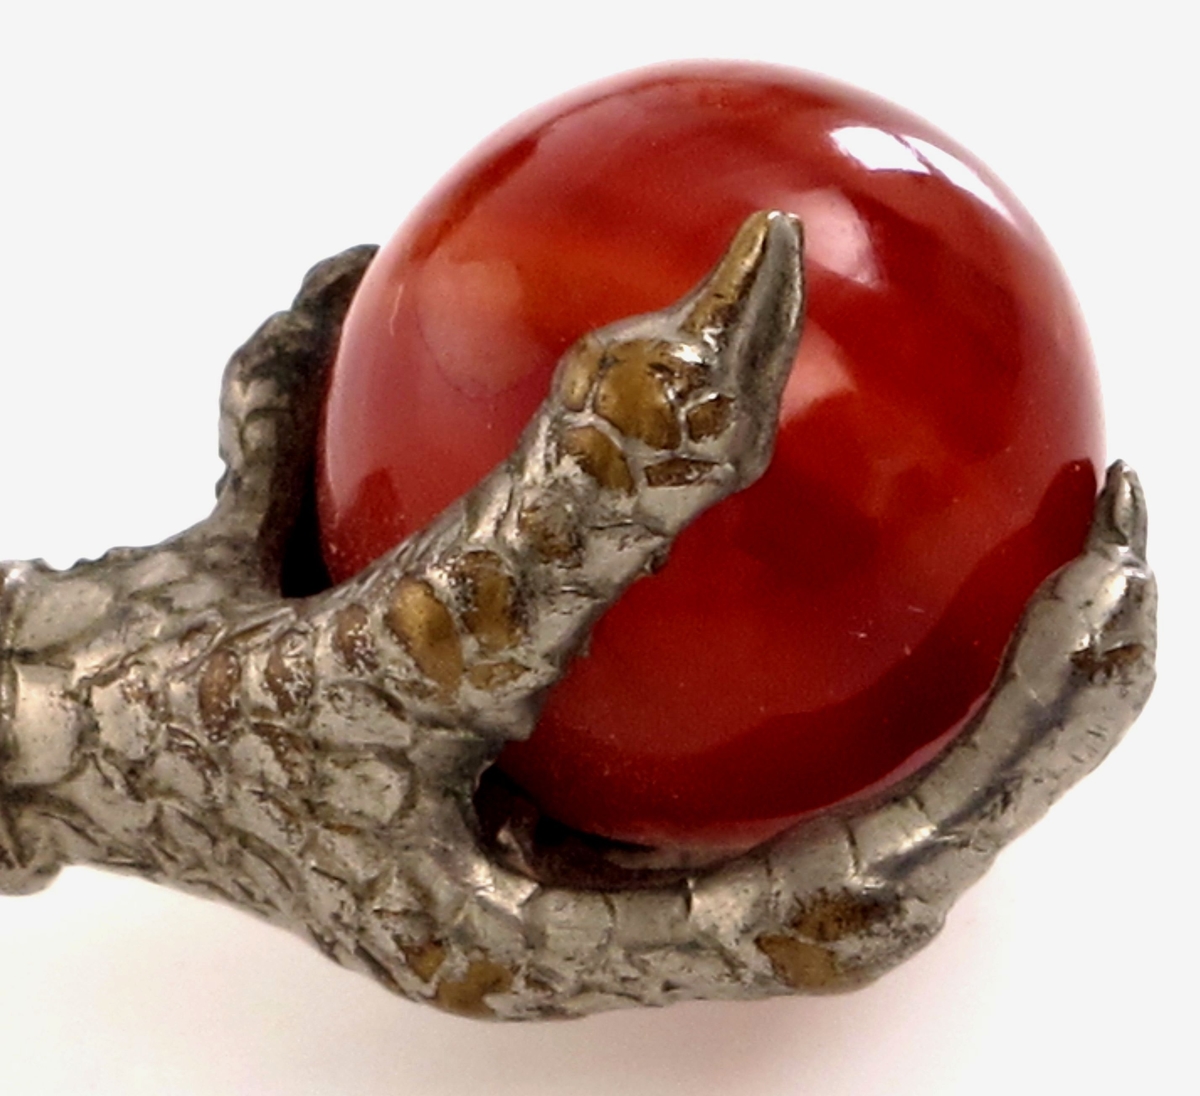 En ørneklo, denne griper/ om en kuleformet rødbrun polert sten.